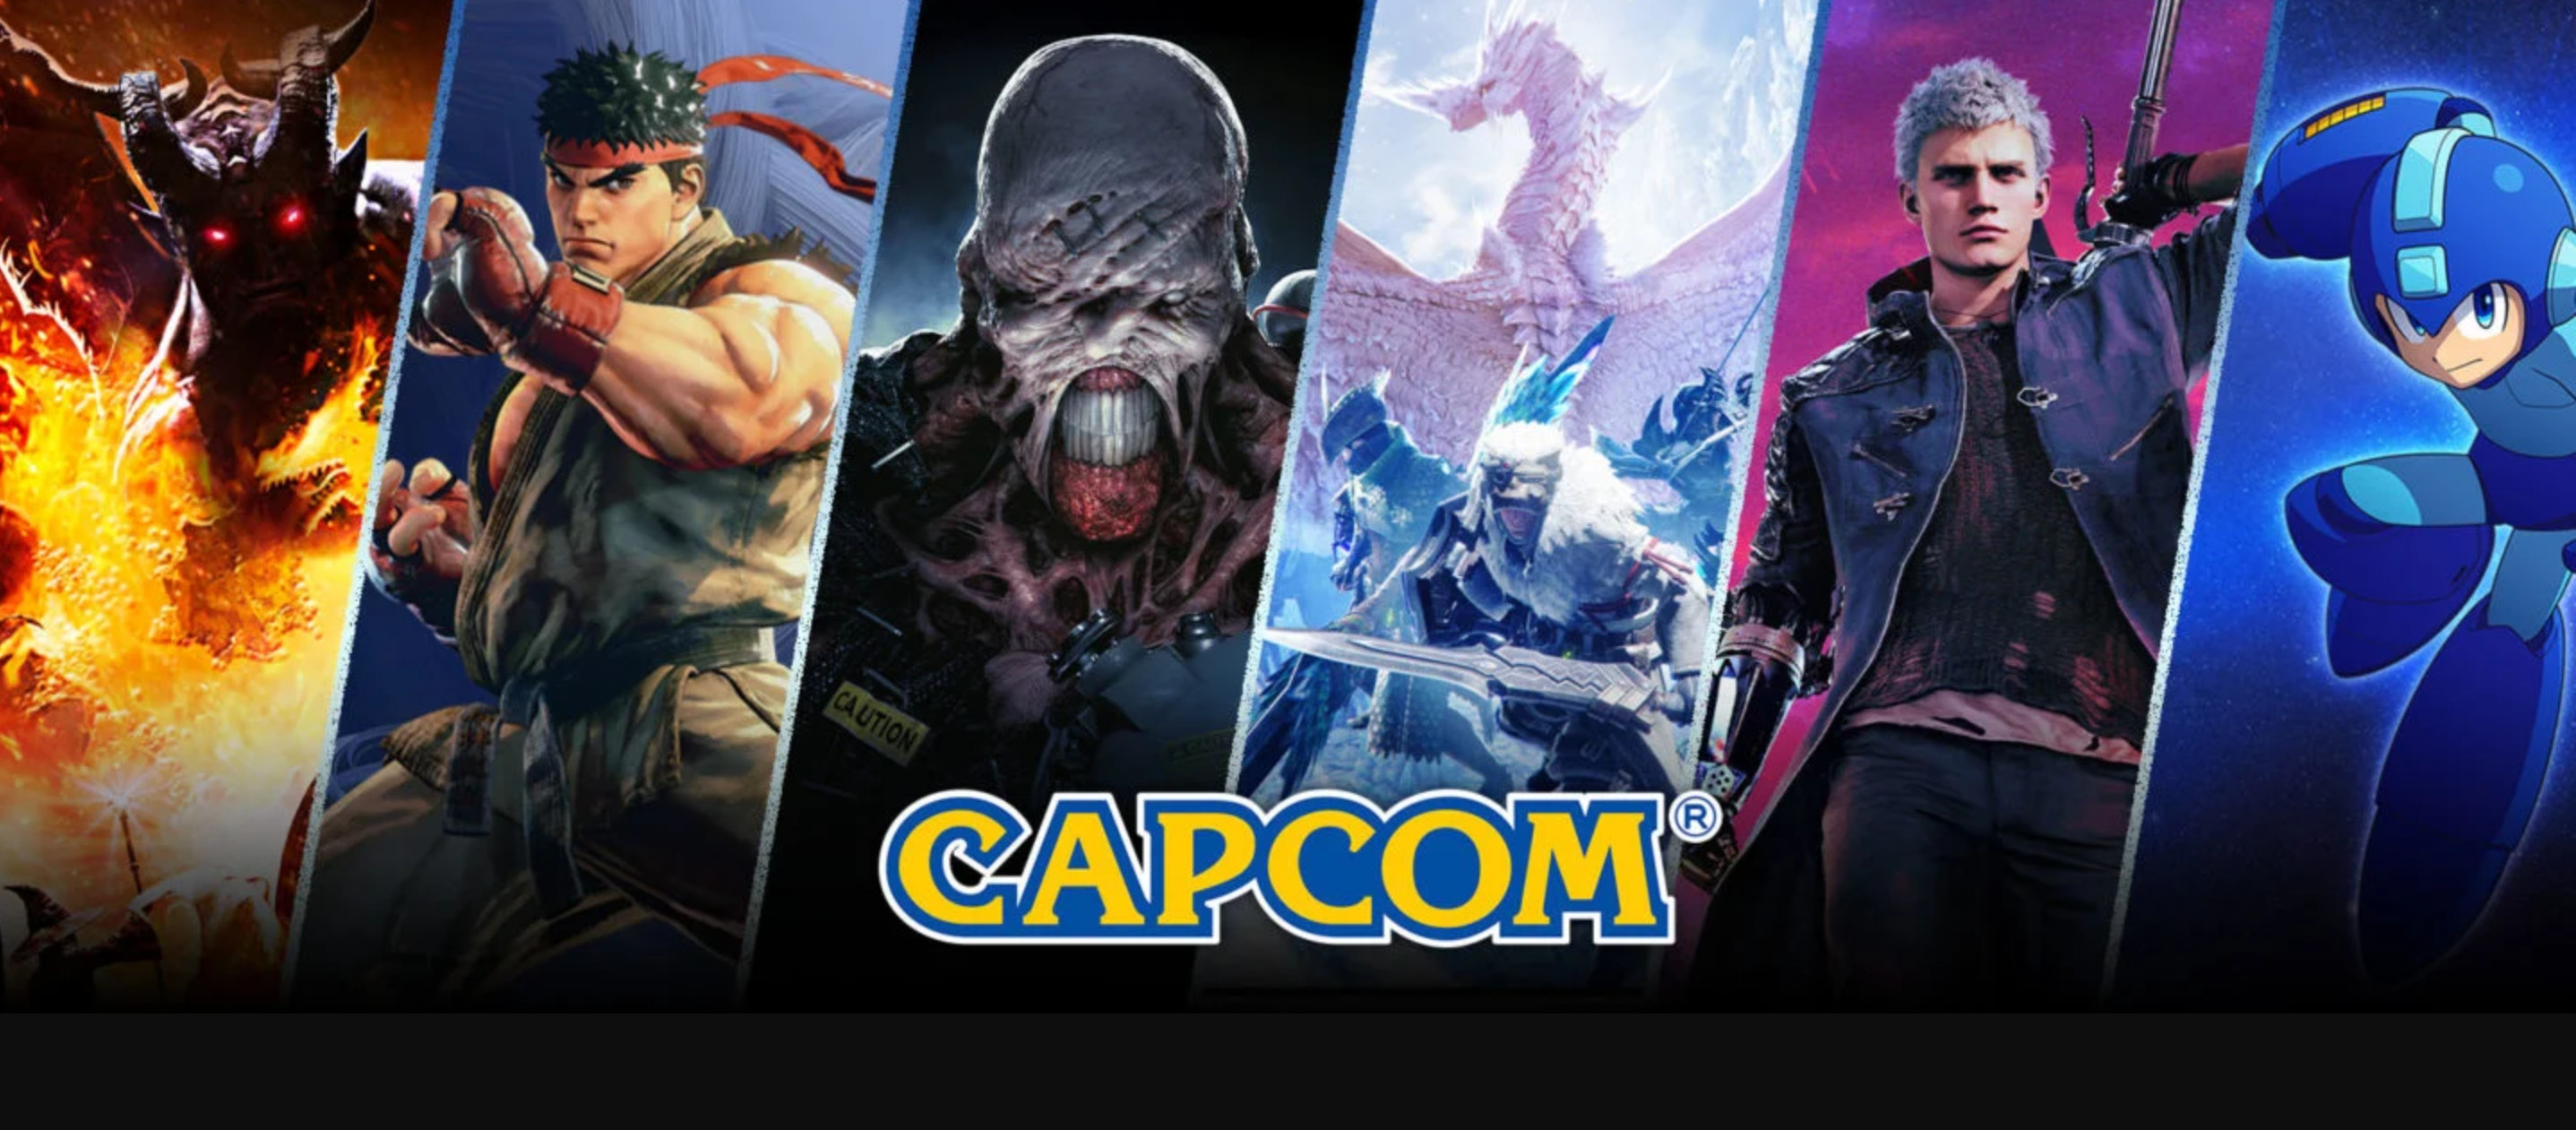 Capcom游戏销量打破记录 股价来到历史新高 二次世界 第2张